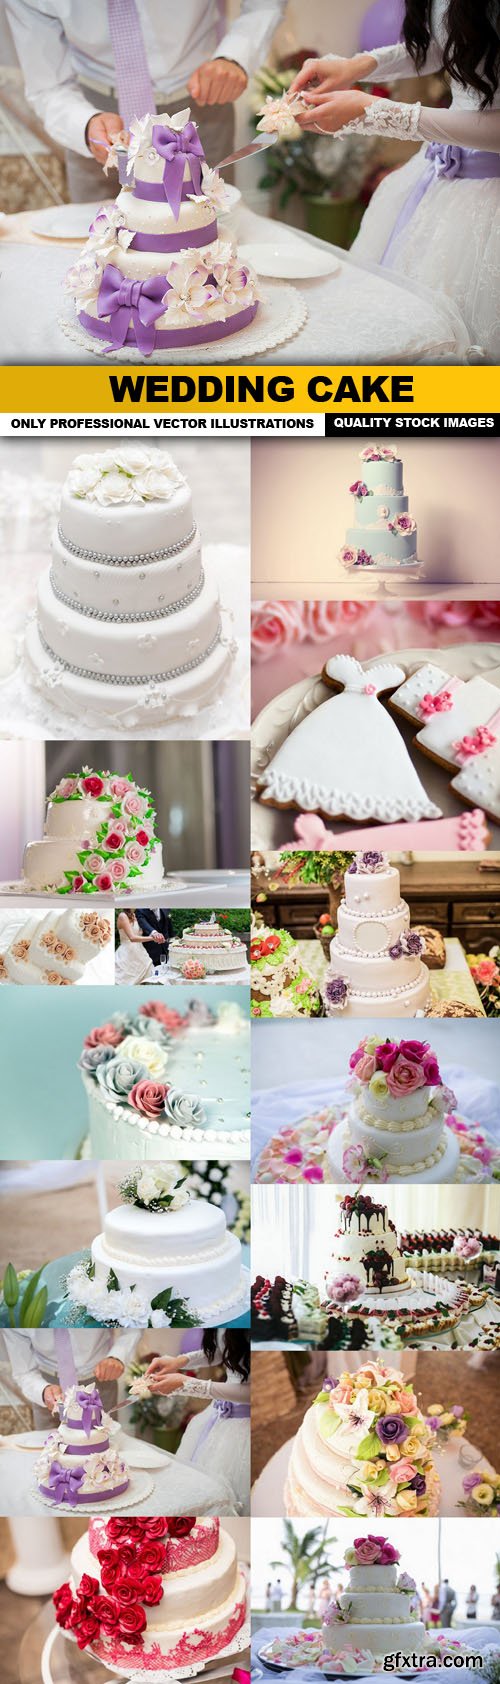 Wedding Cake - 15 HQ Images